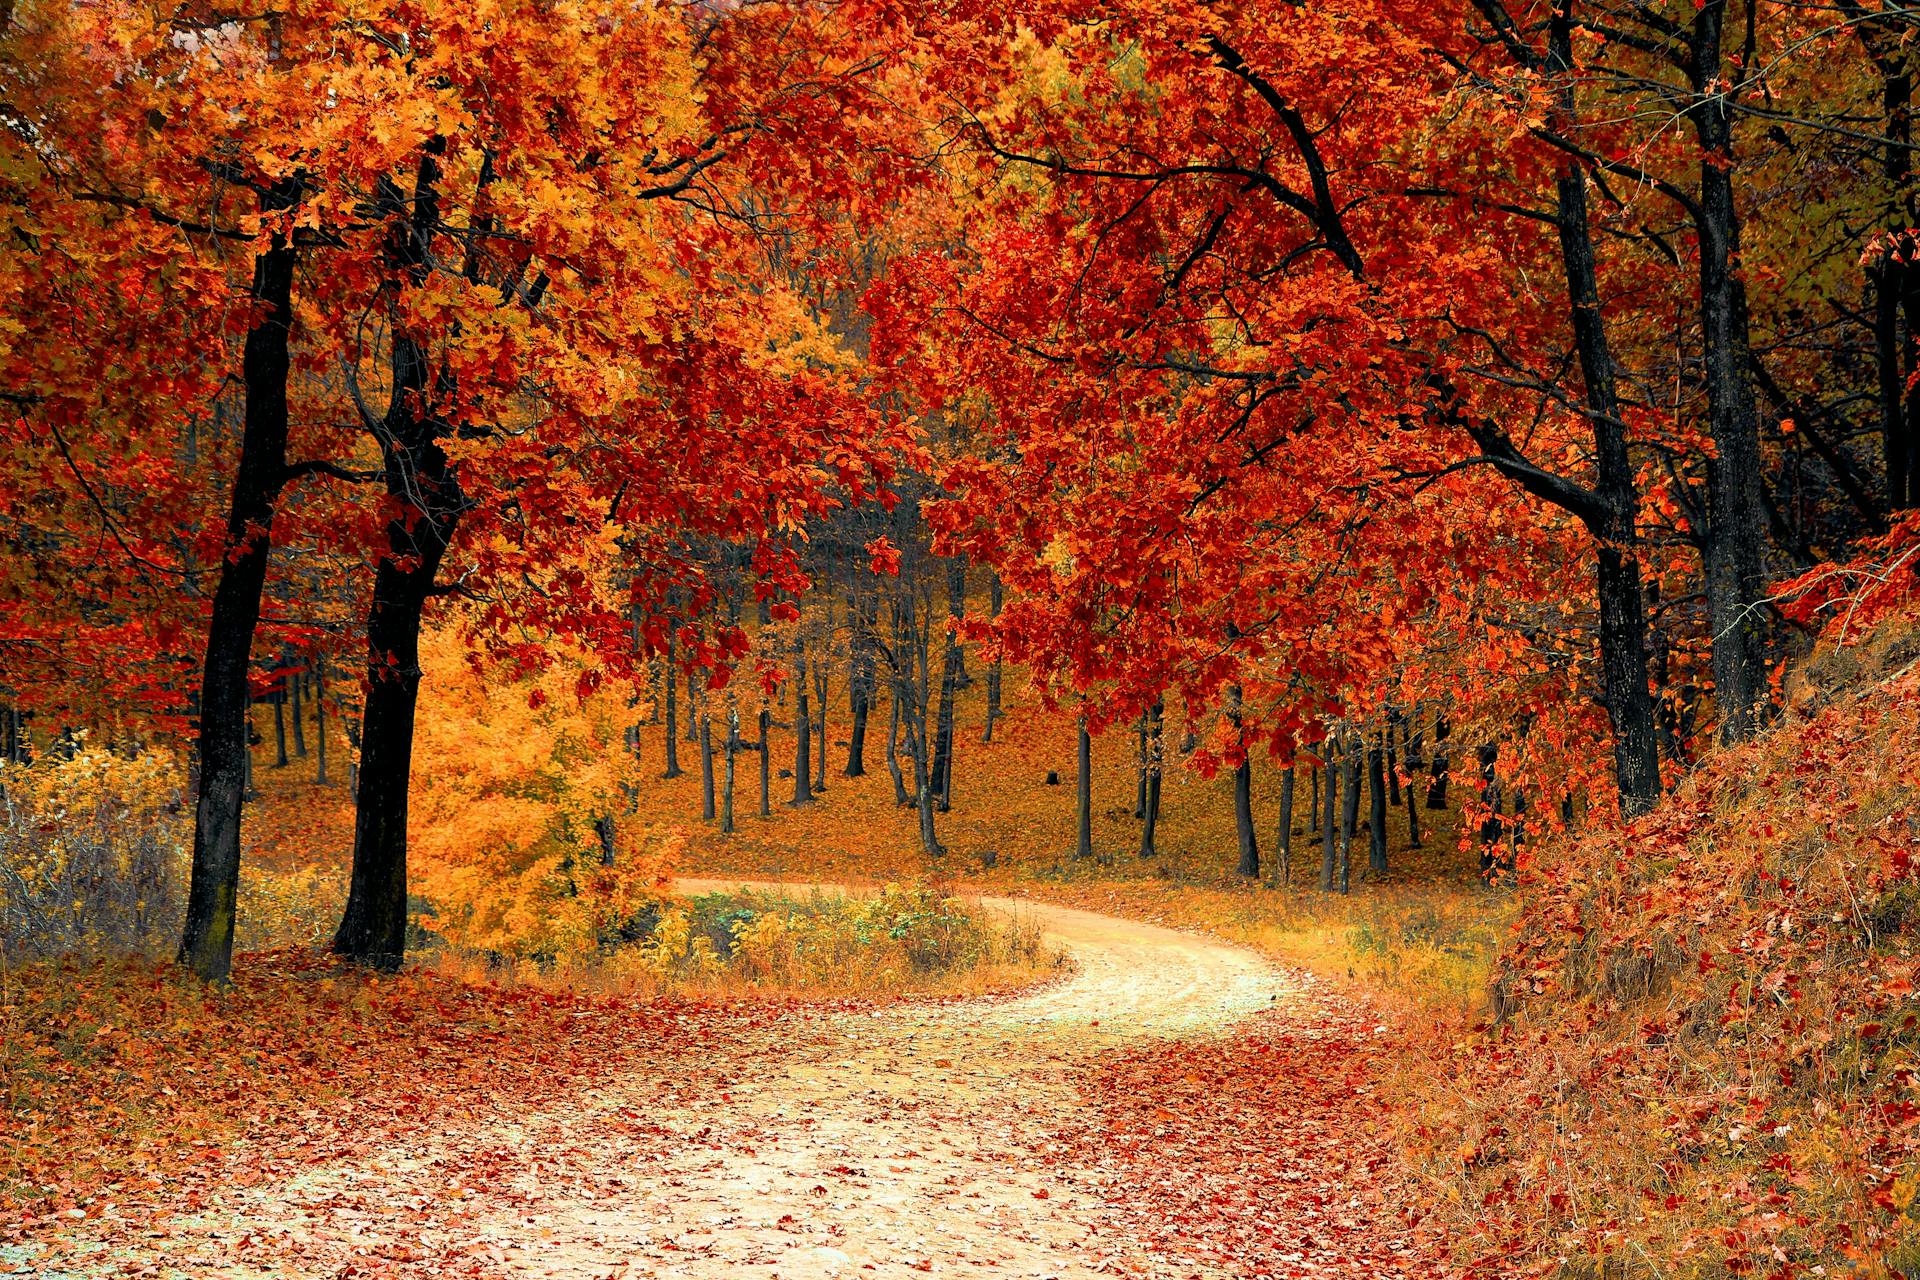 An autumn scene | Source: Pexels